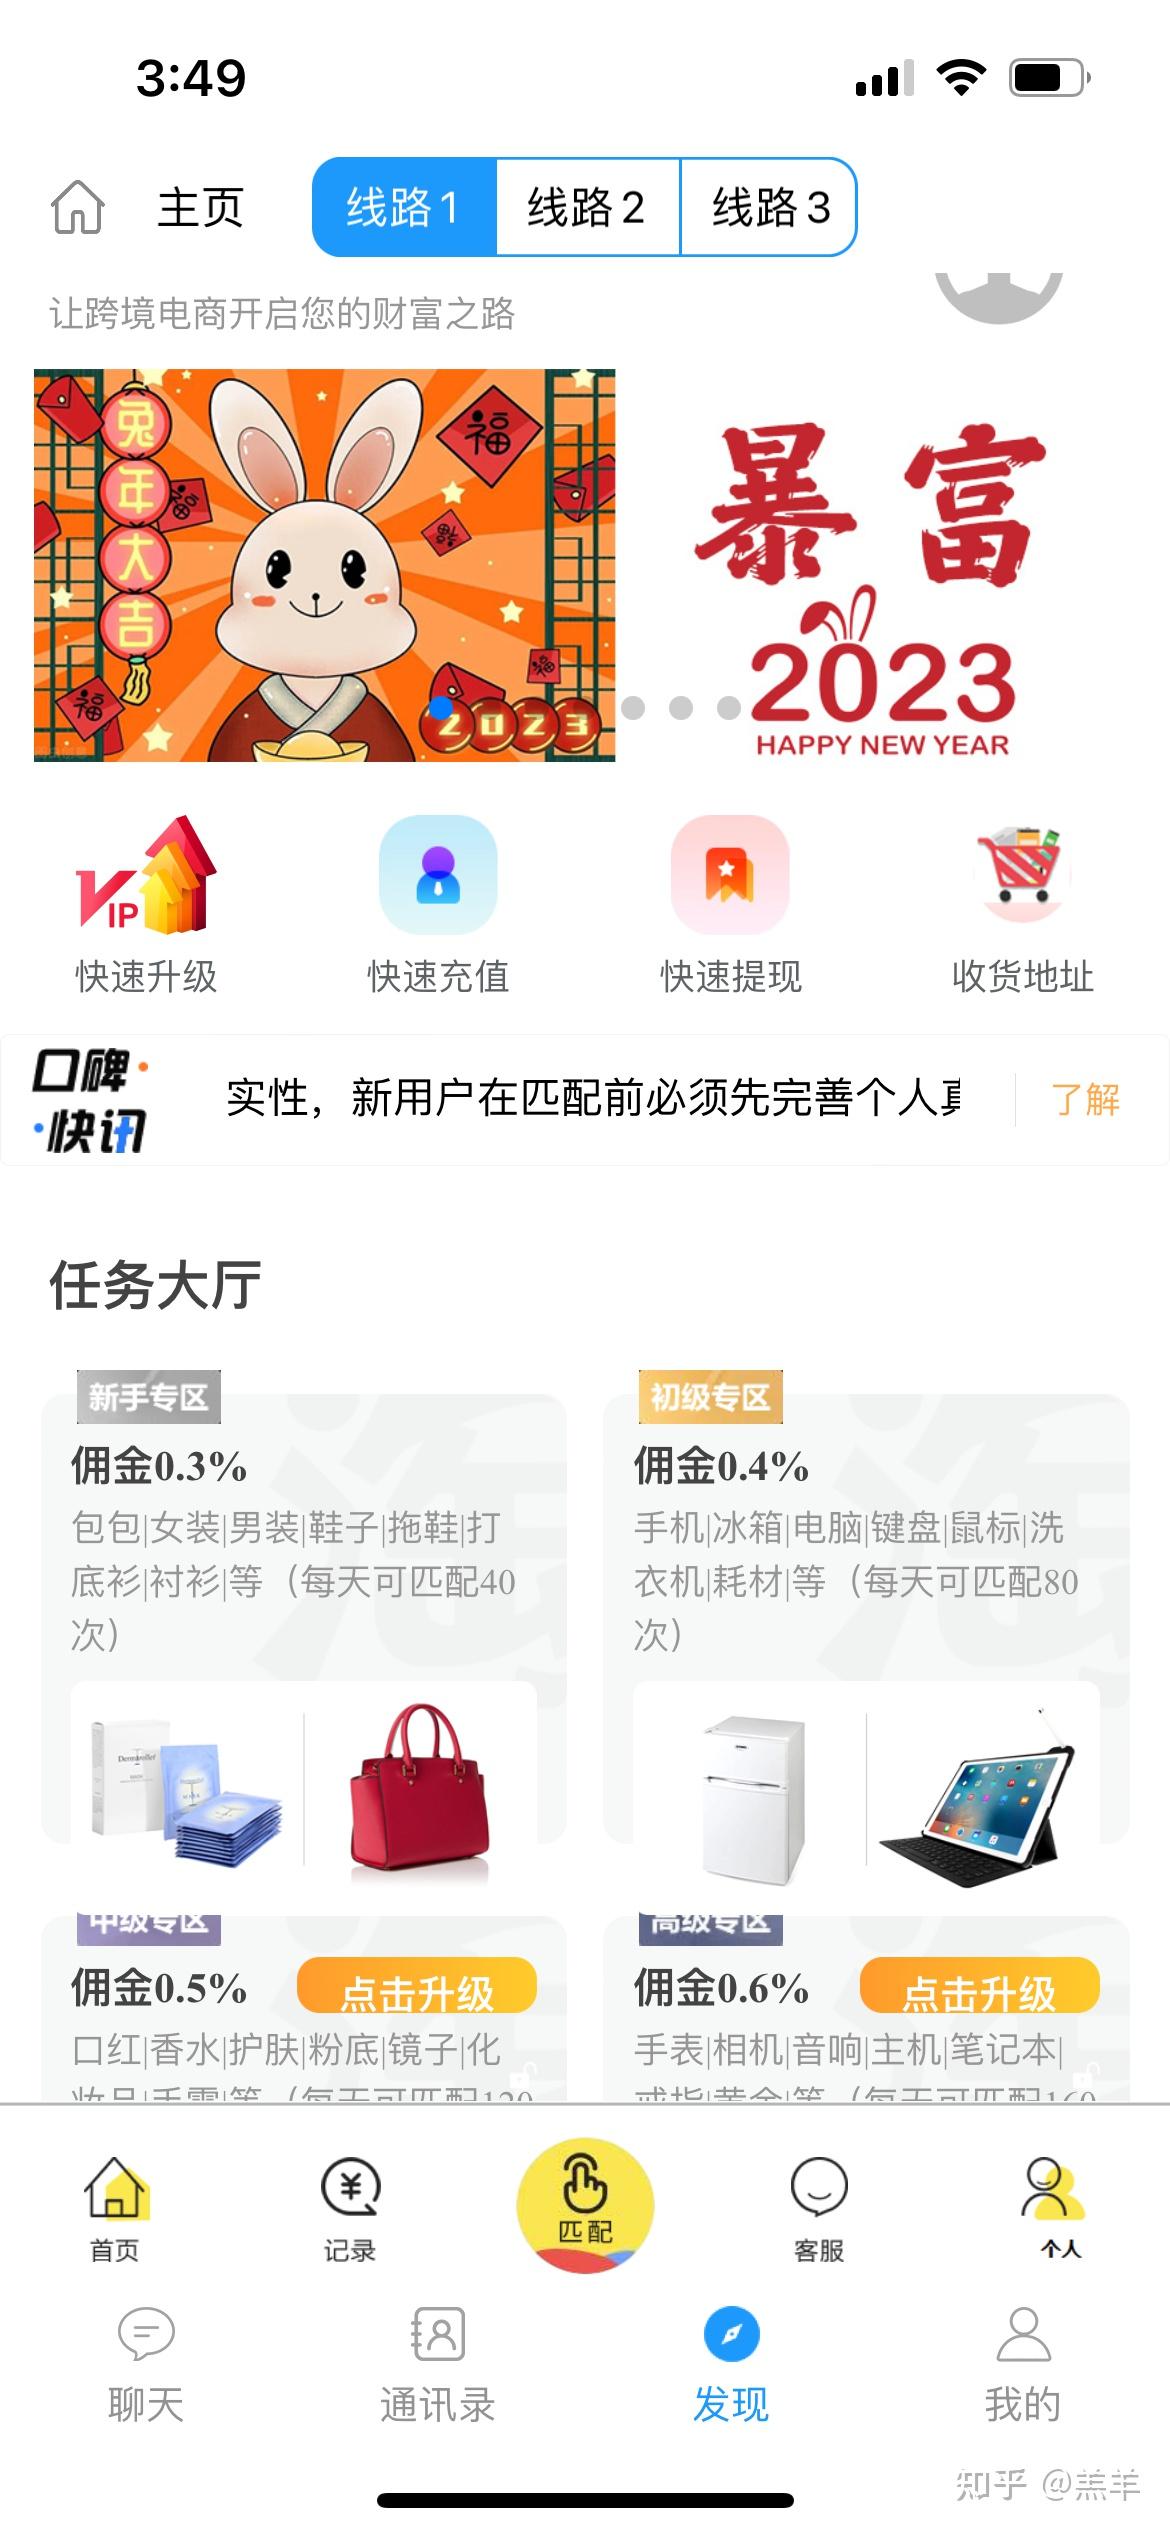 【专题】净网2020 严防网络诈骗 - 专题 - 温州网